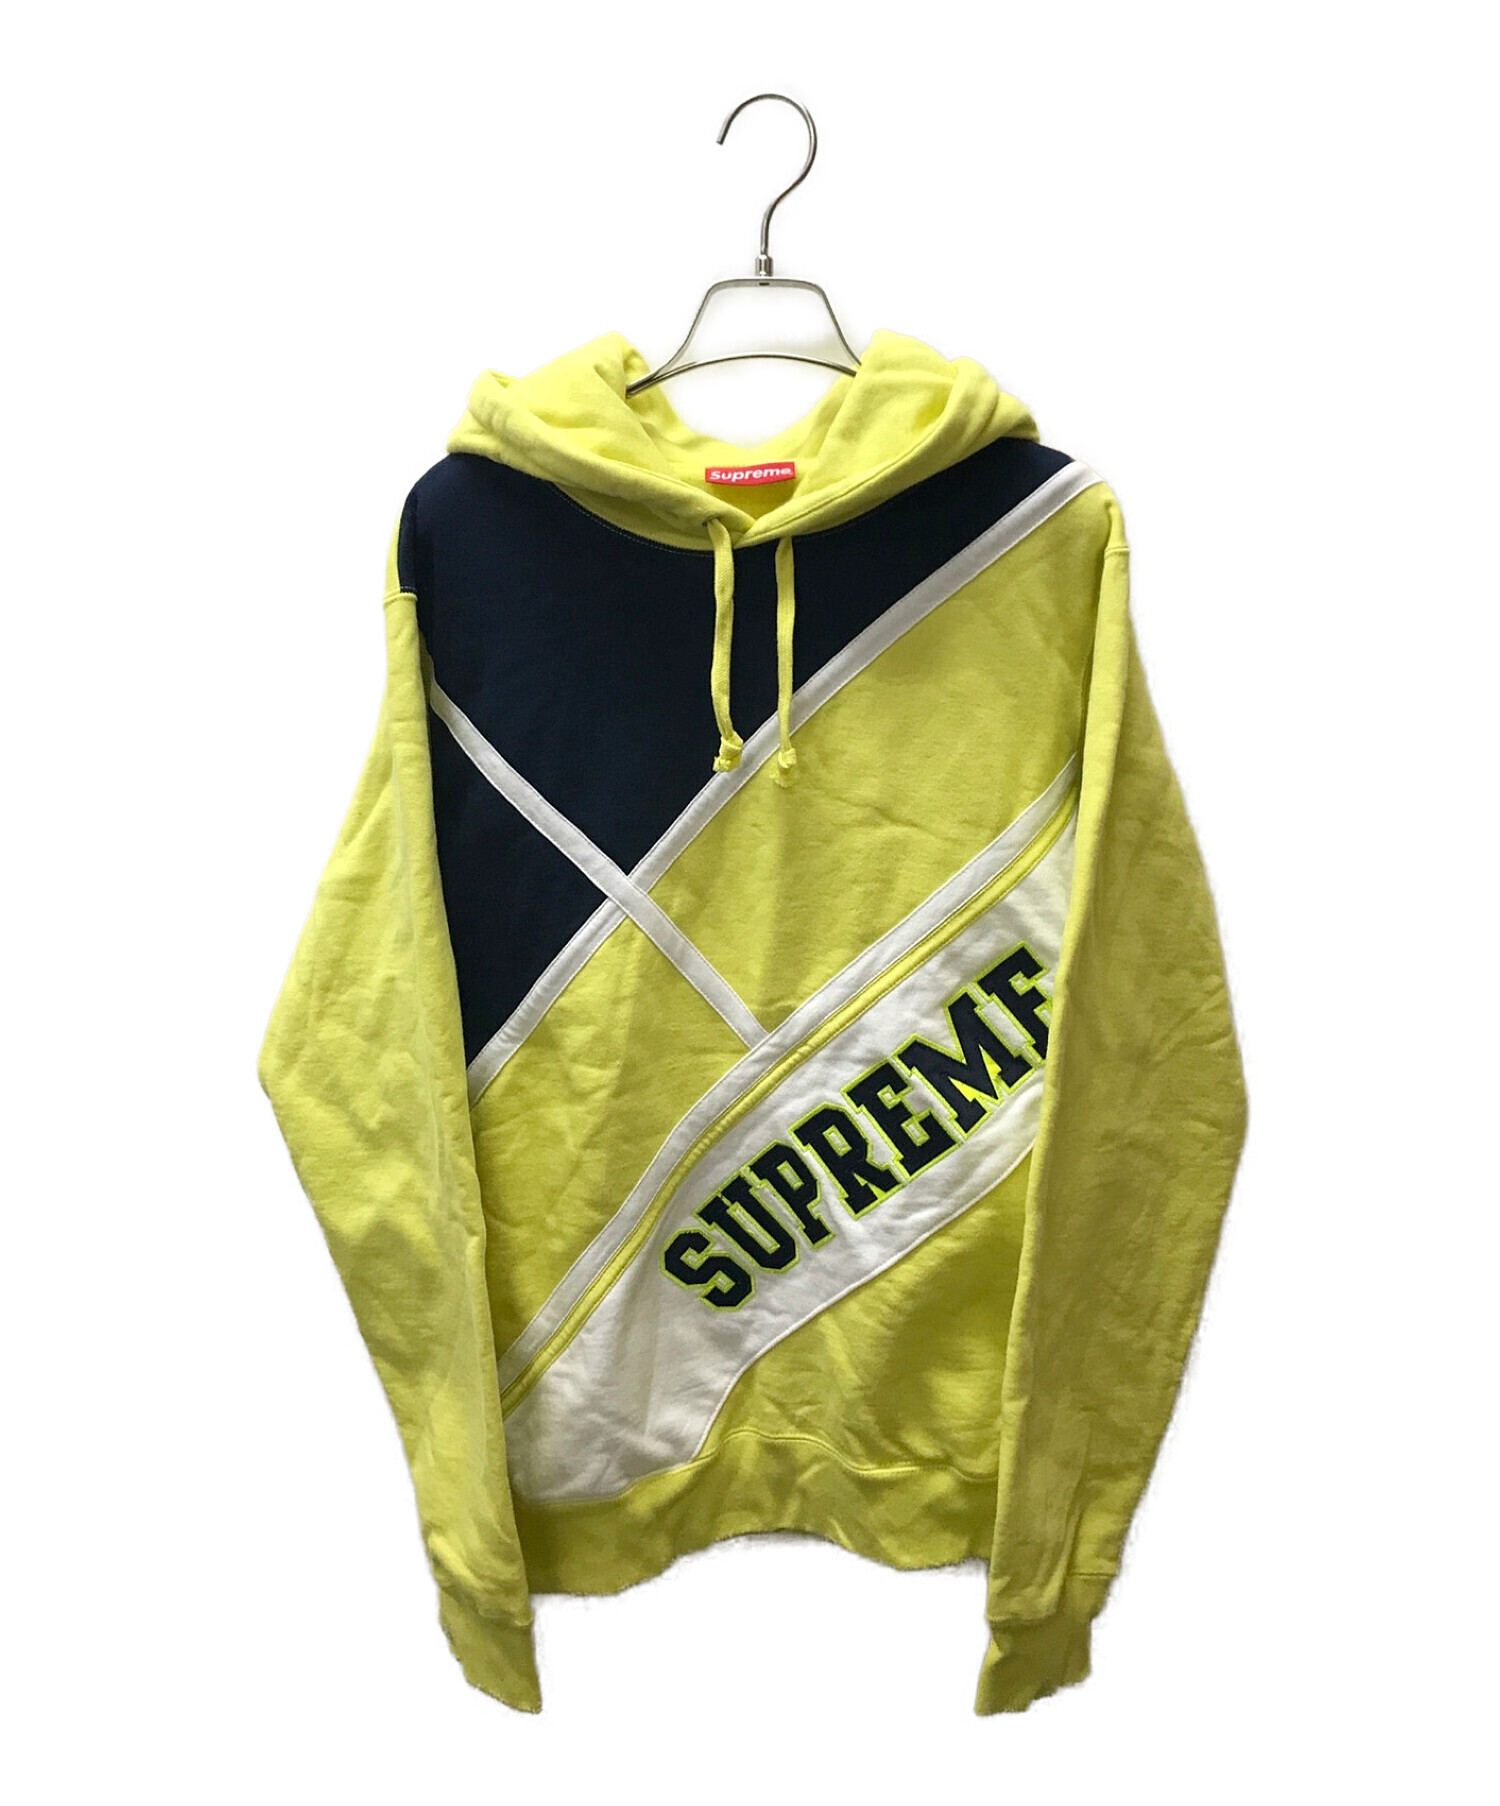 supreme diagonal hooded sweatshirts